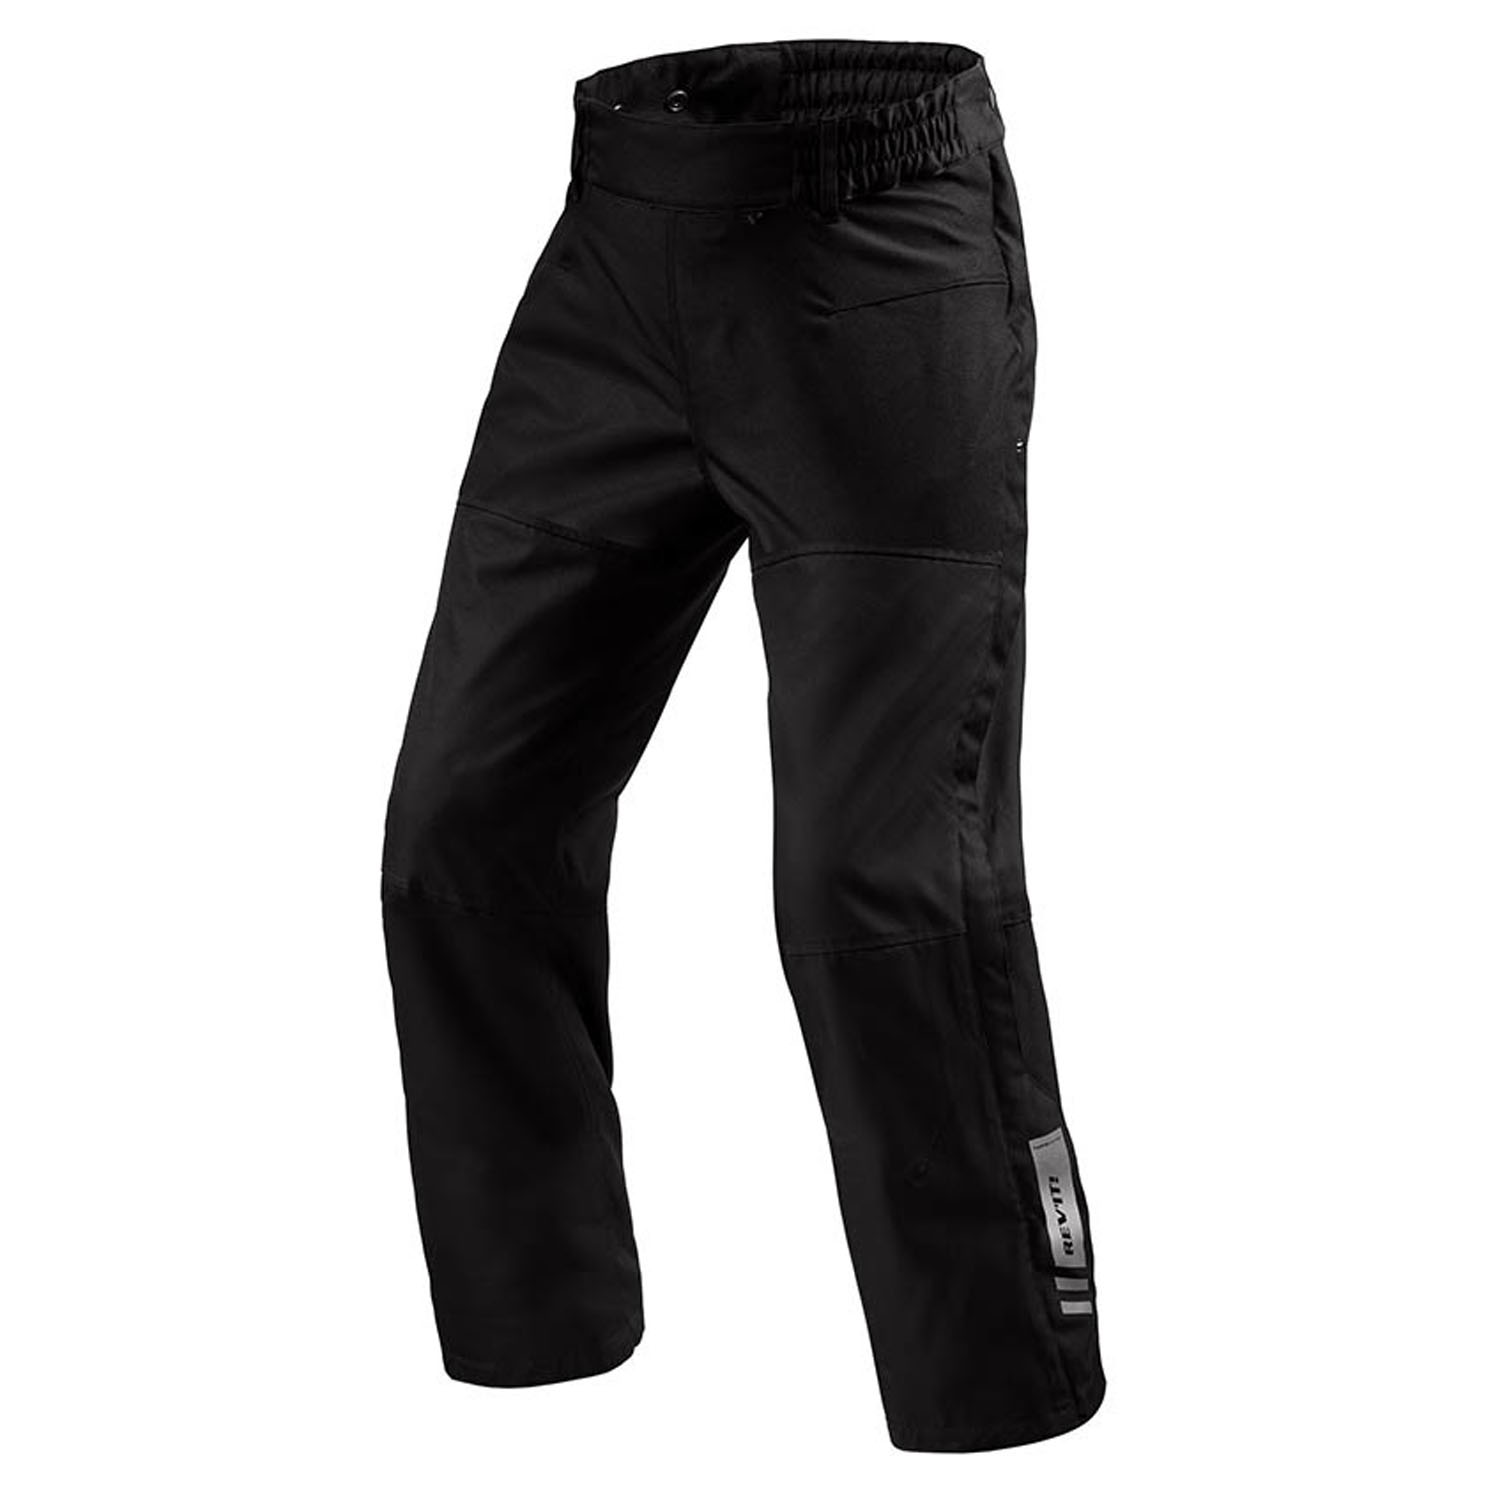 Image of REV'IT! Pants Axis 2 H2O Black Long Motorcycle Pants Größe M